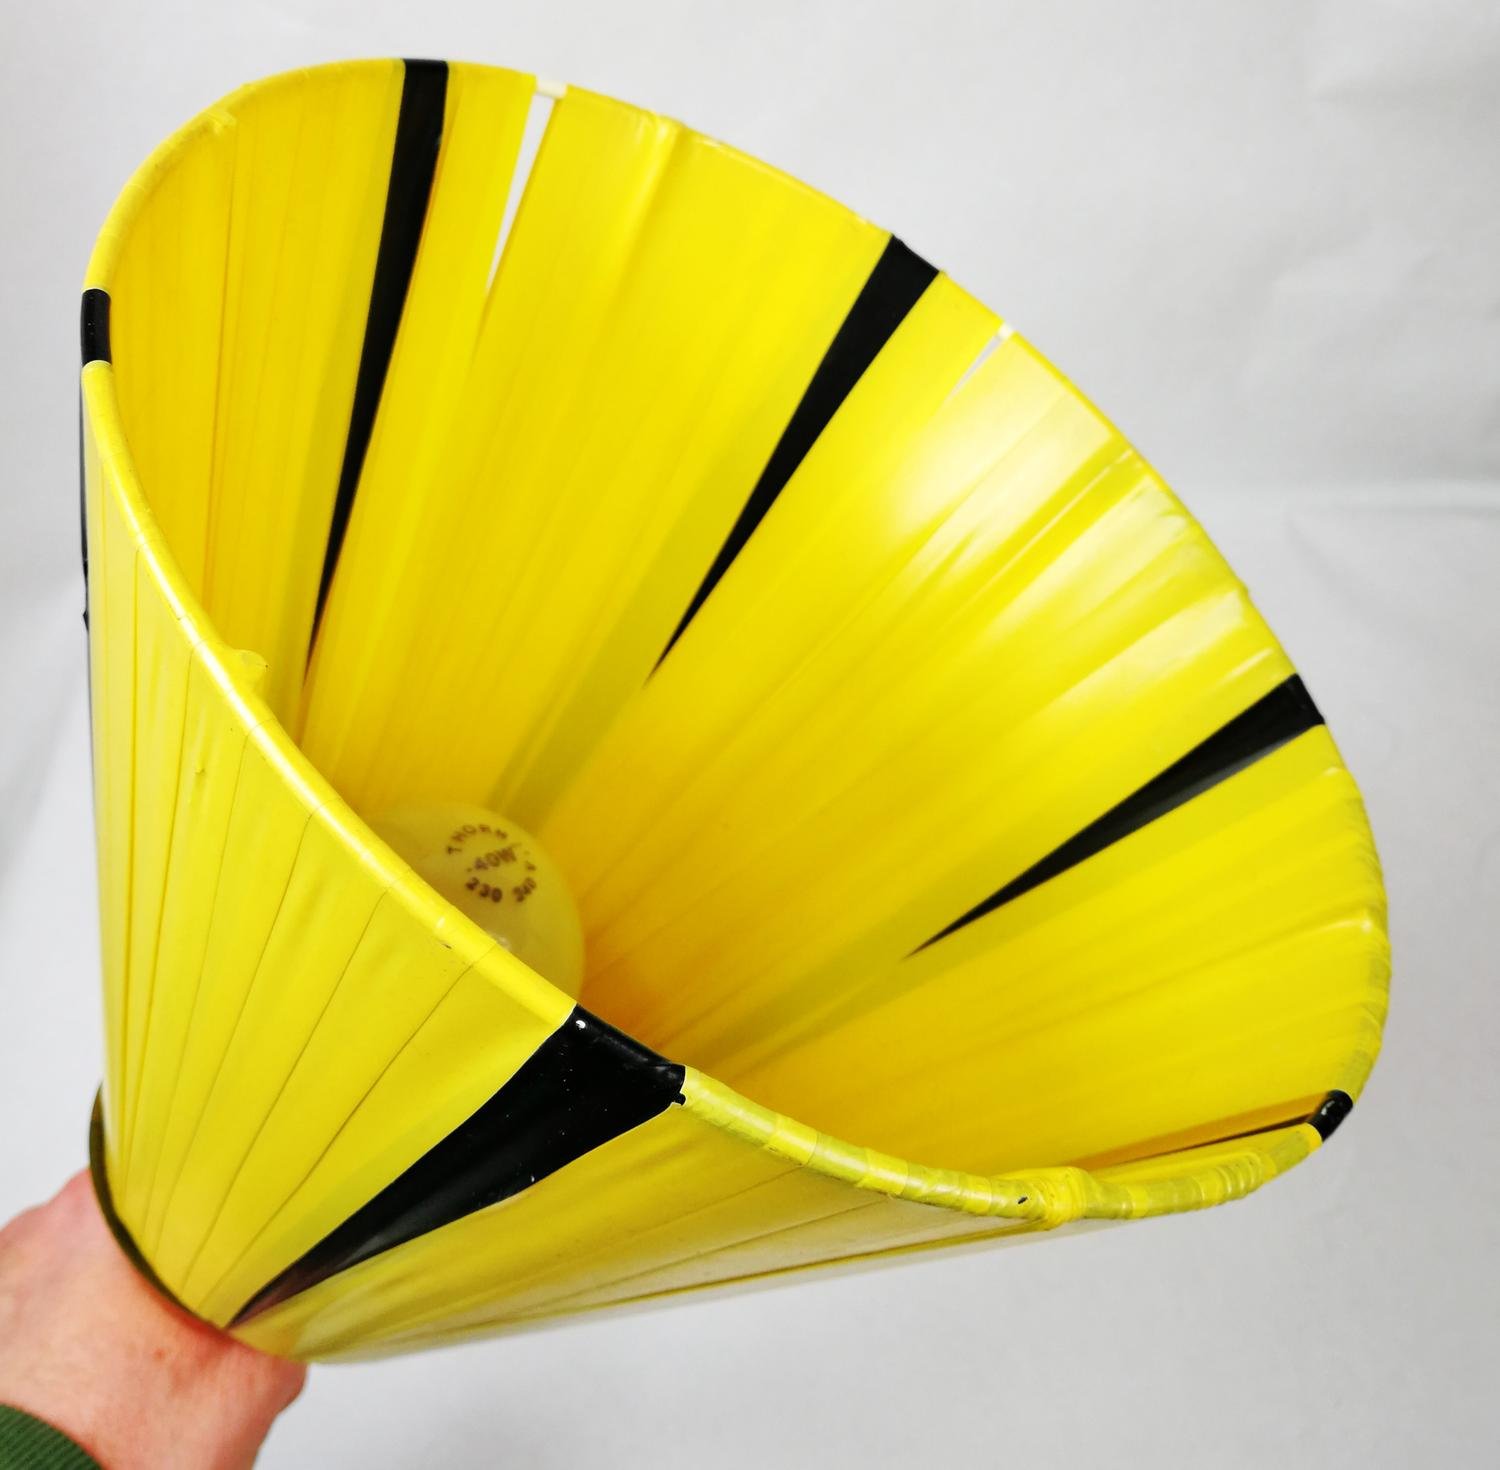 Vägglampa svängbar med plastband i gult och svart med mässingsdetaljer (Retro)